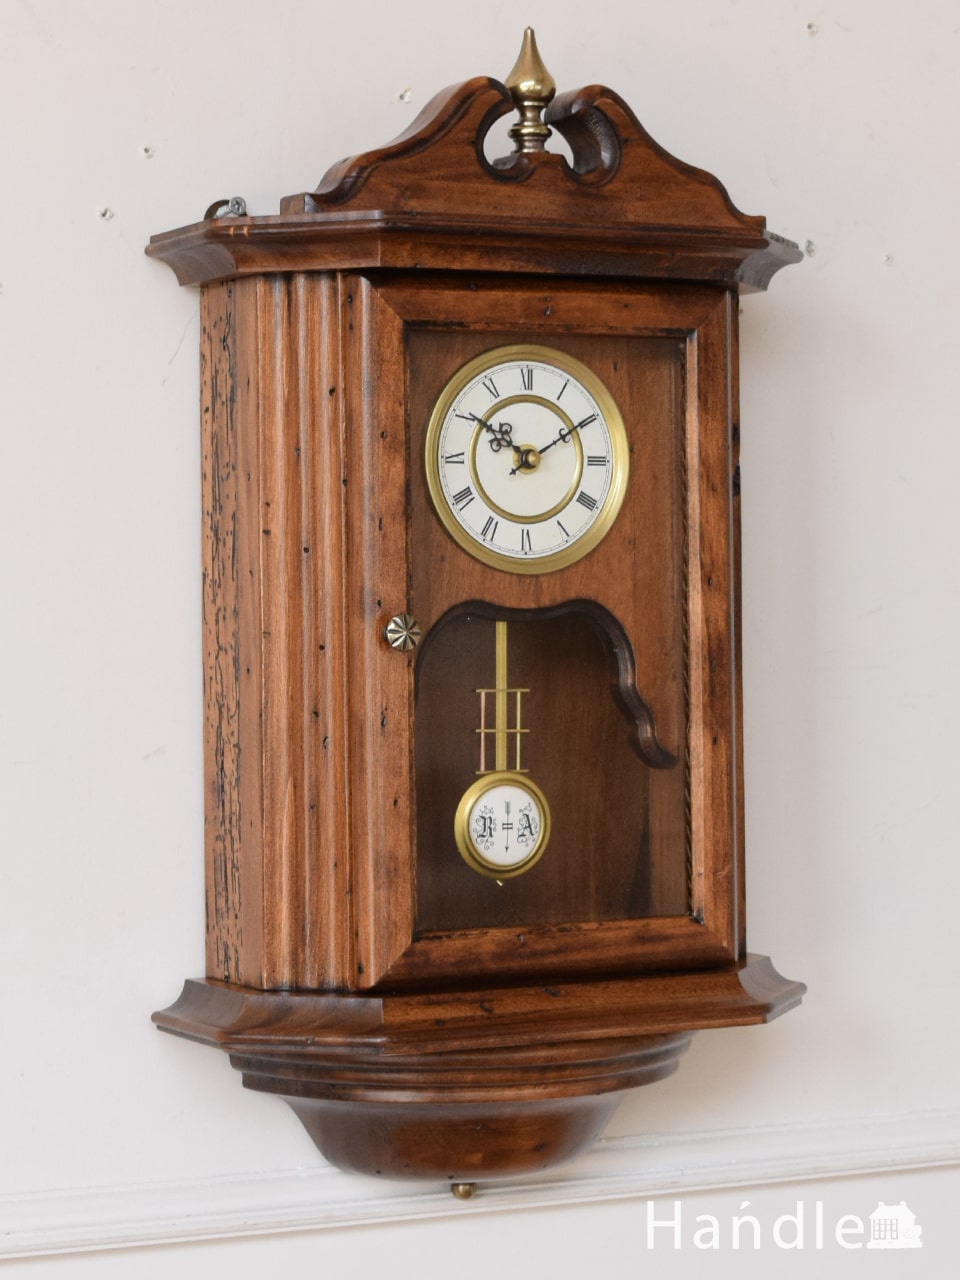 イタリアから届いたアンティーク調の掛け時計、カパーニ社の振子付時計 (n8-138)